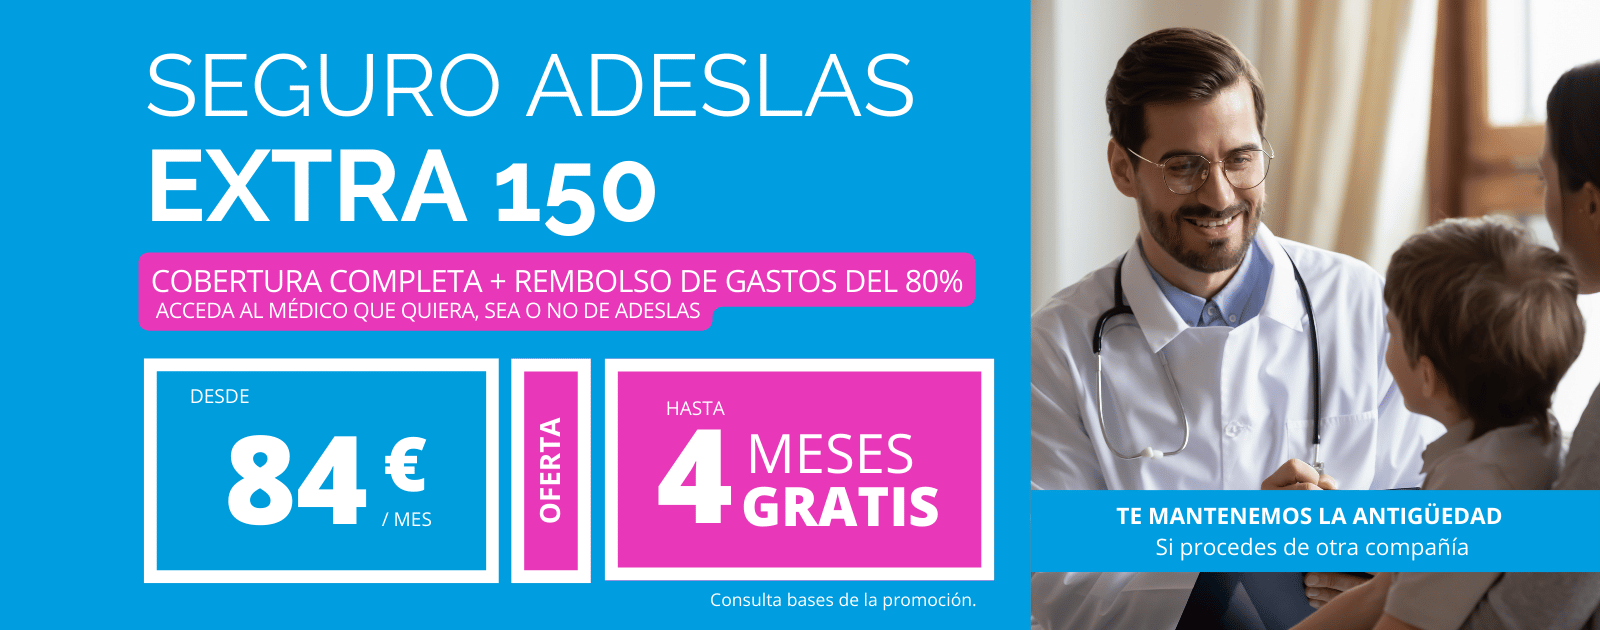 Adeslas Extra 150 el seguro mas completo con rembolso de Adeslas ahora con hasta 4 Meses Gratis